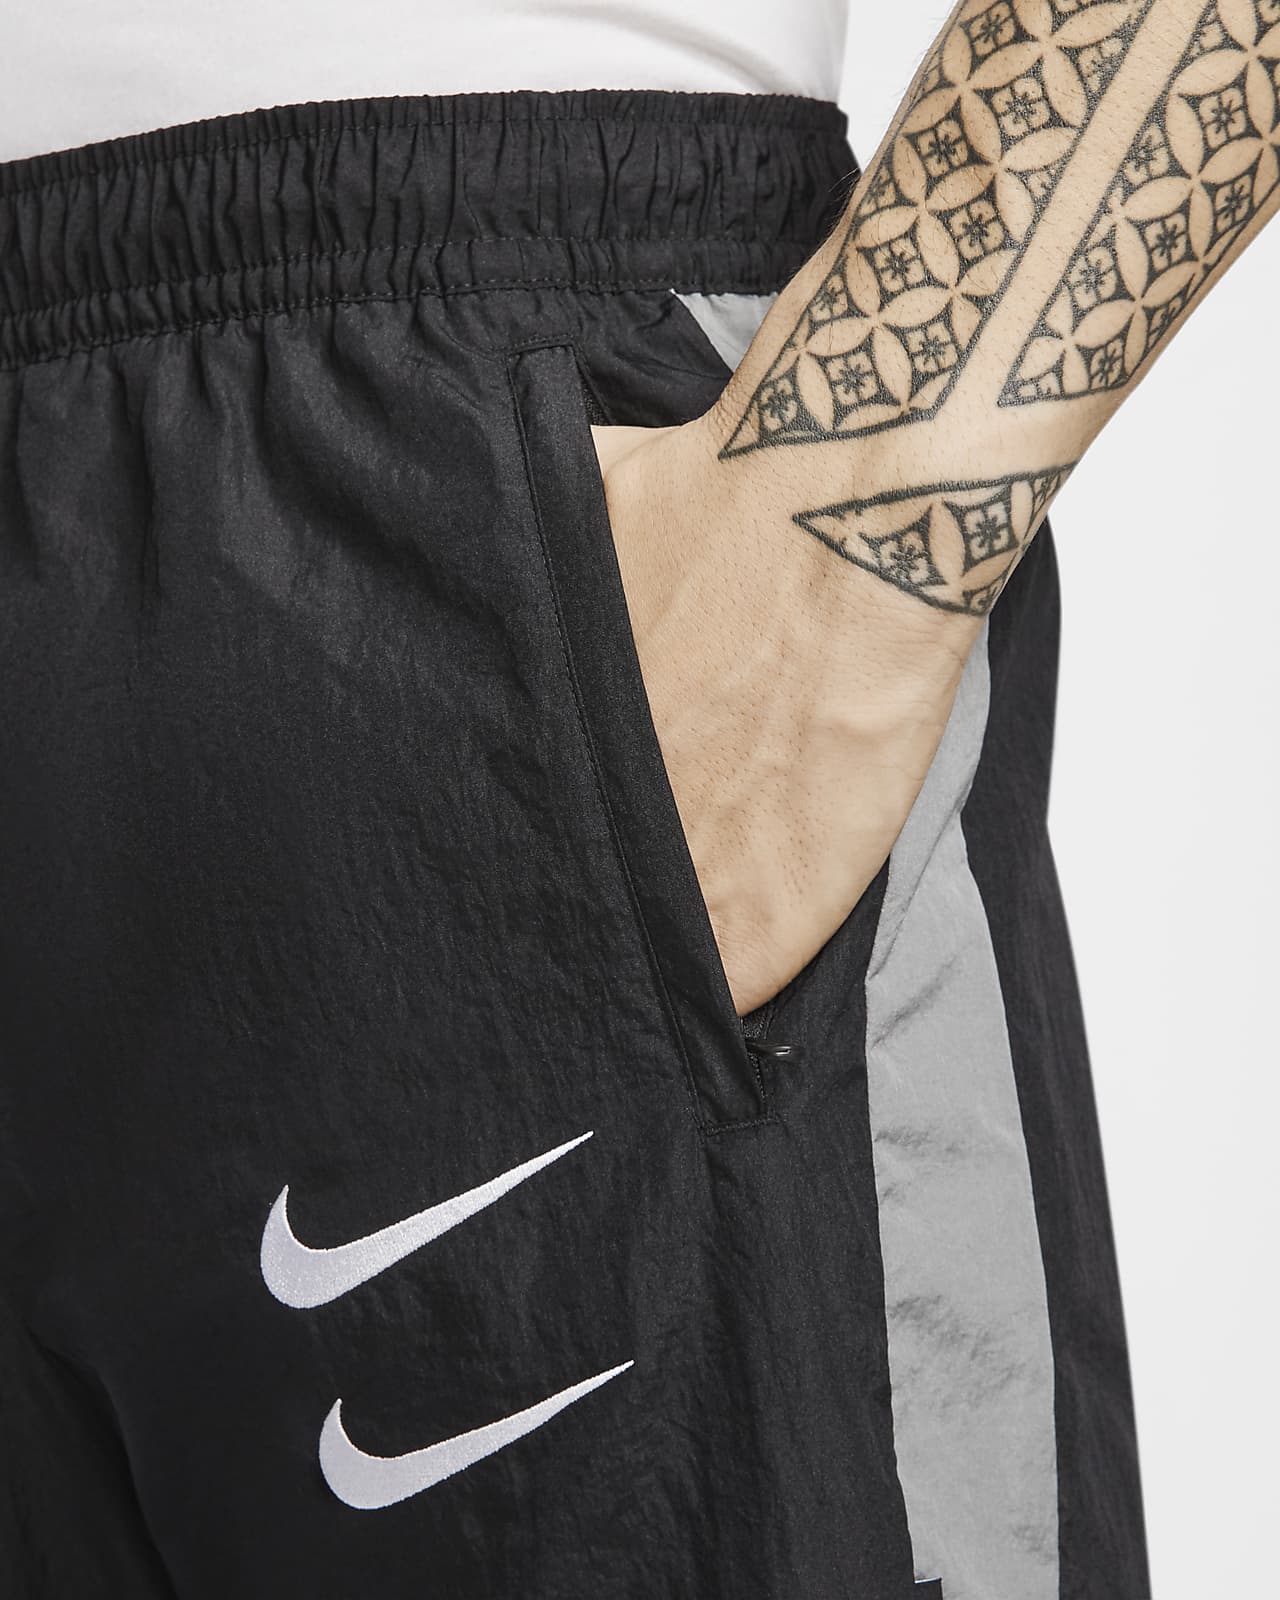 Nike Sportswear Swoosh Men's Woven Trousers